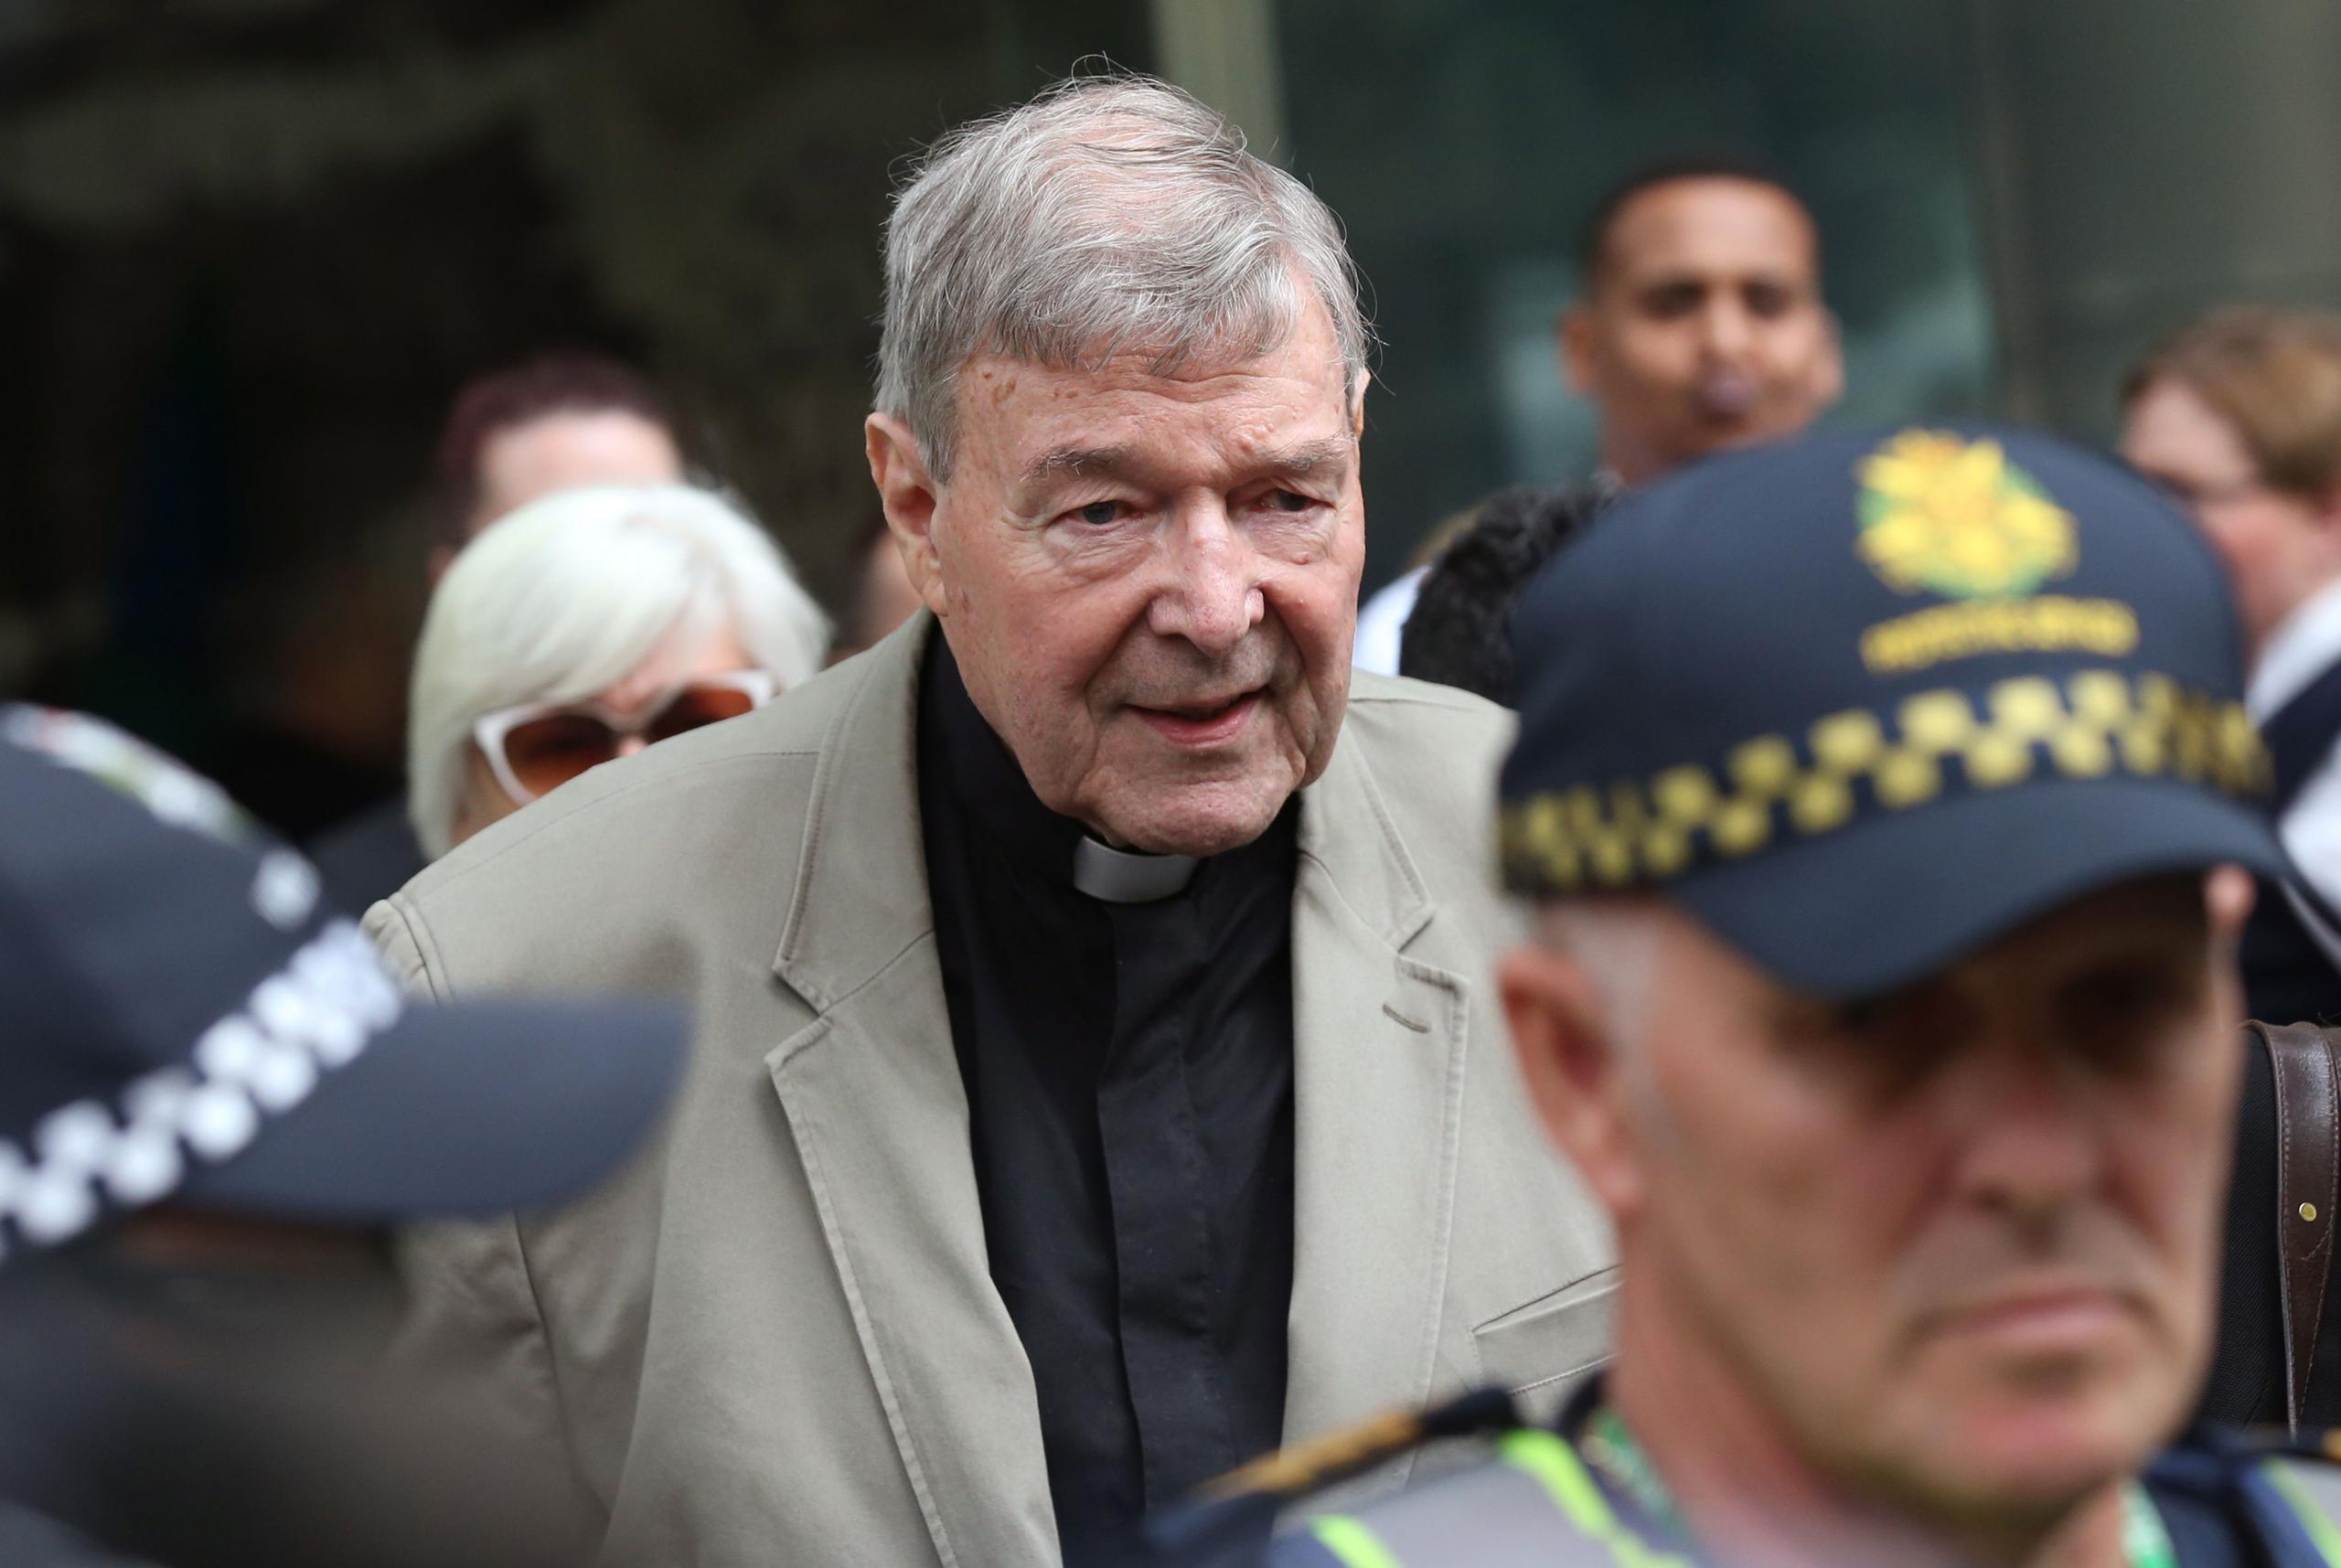 El cardenal australiano George Pell abandona el Tribunal del Condado en Melbourne, Victoria, Australia.